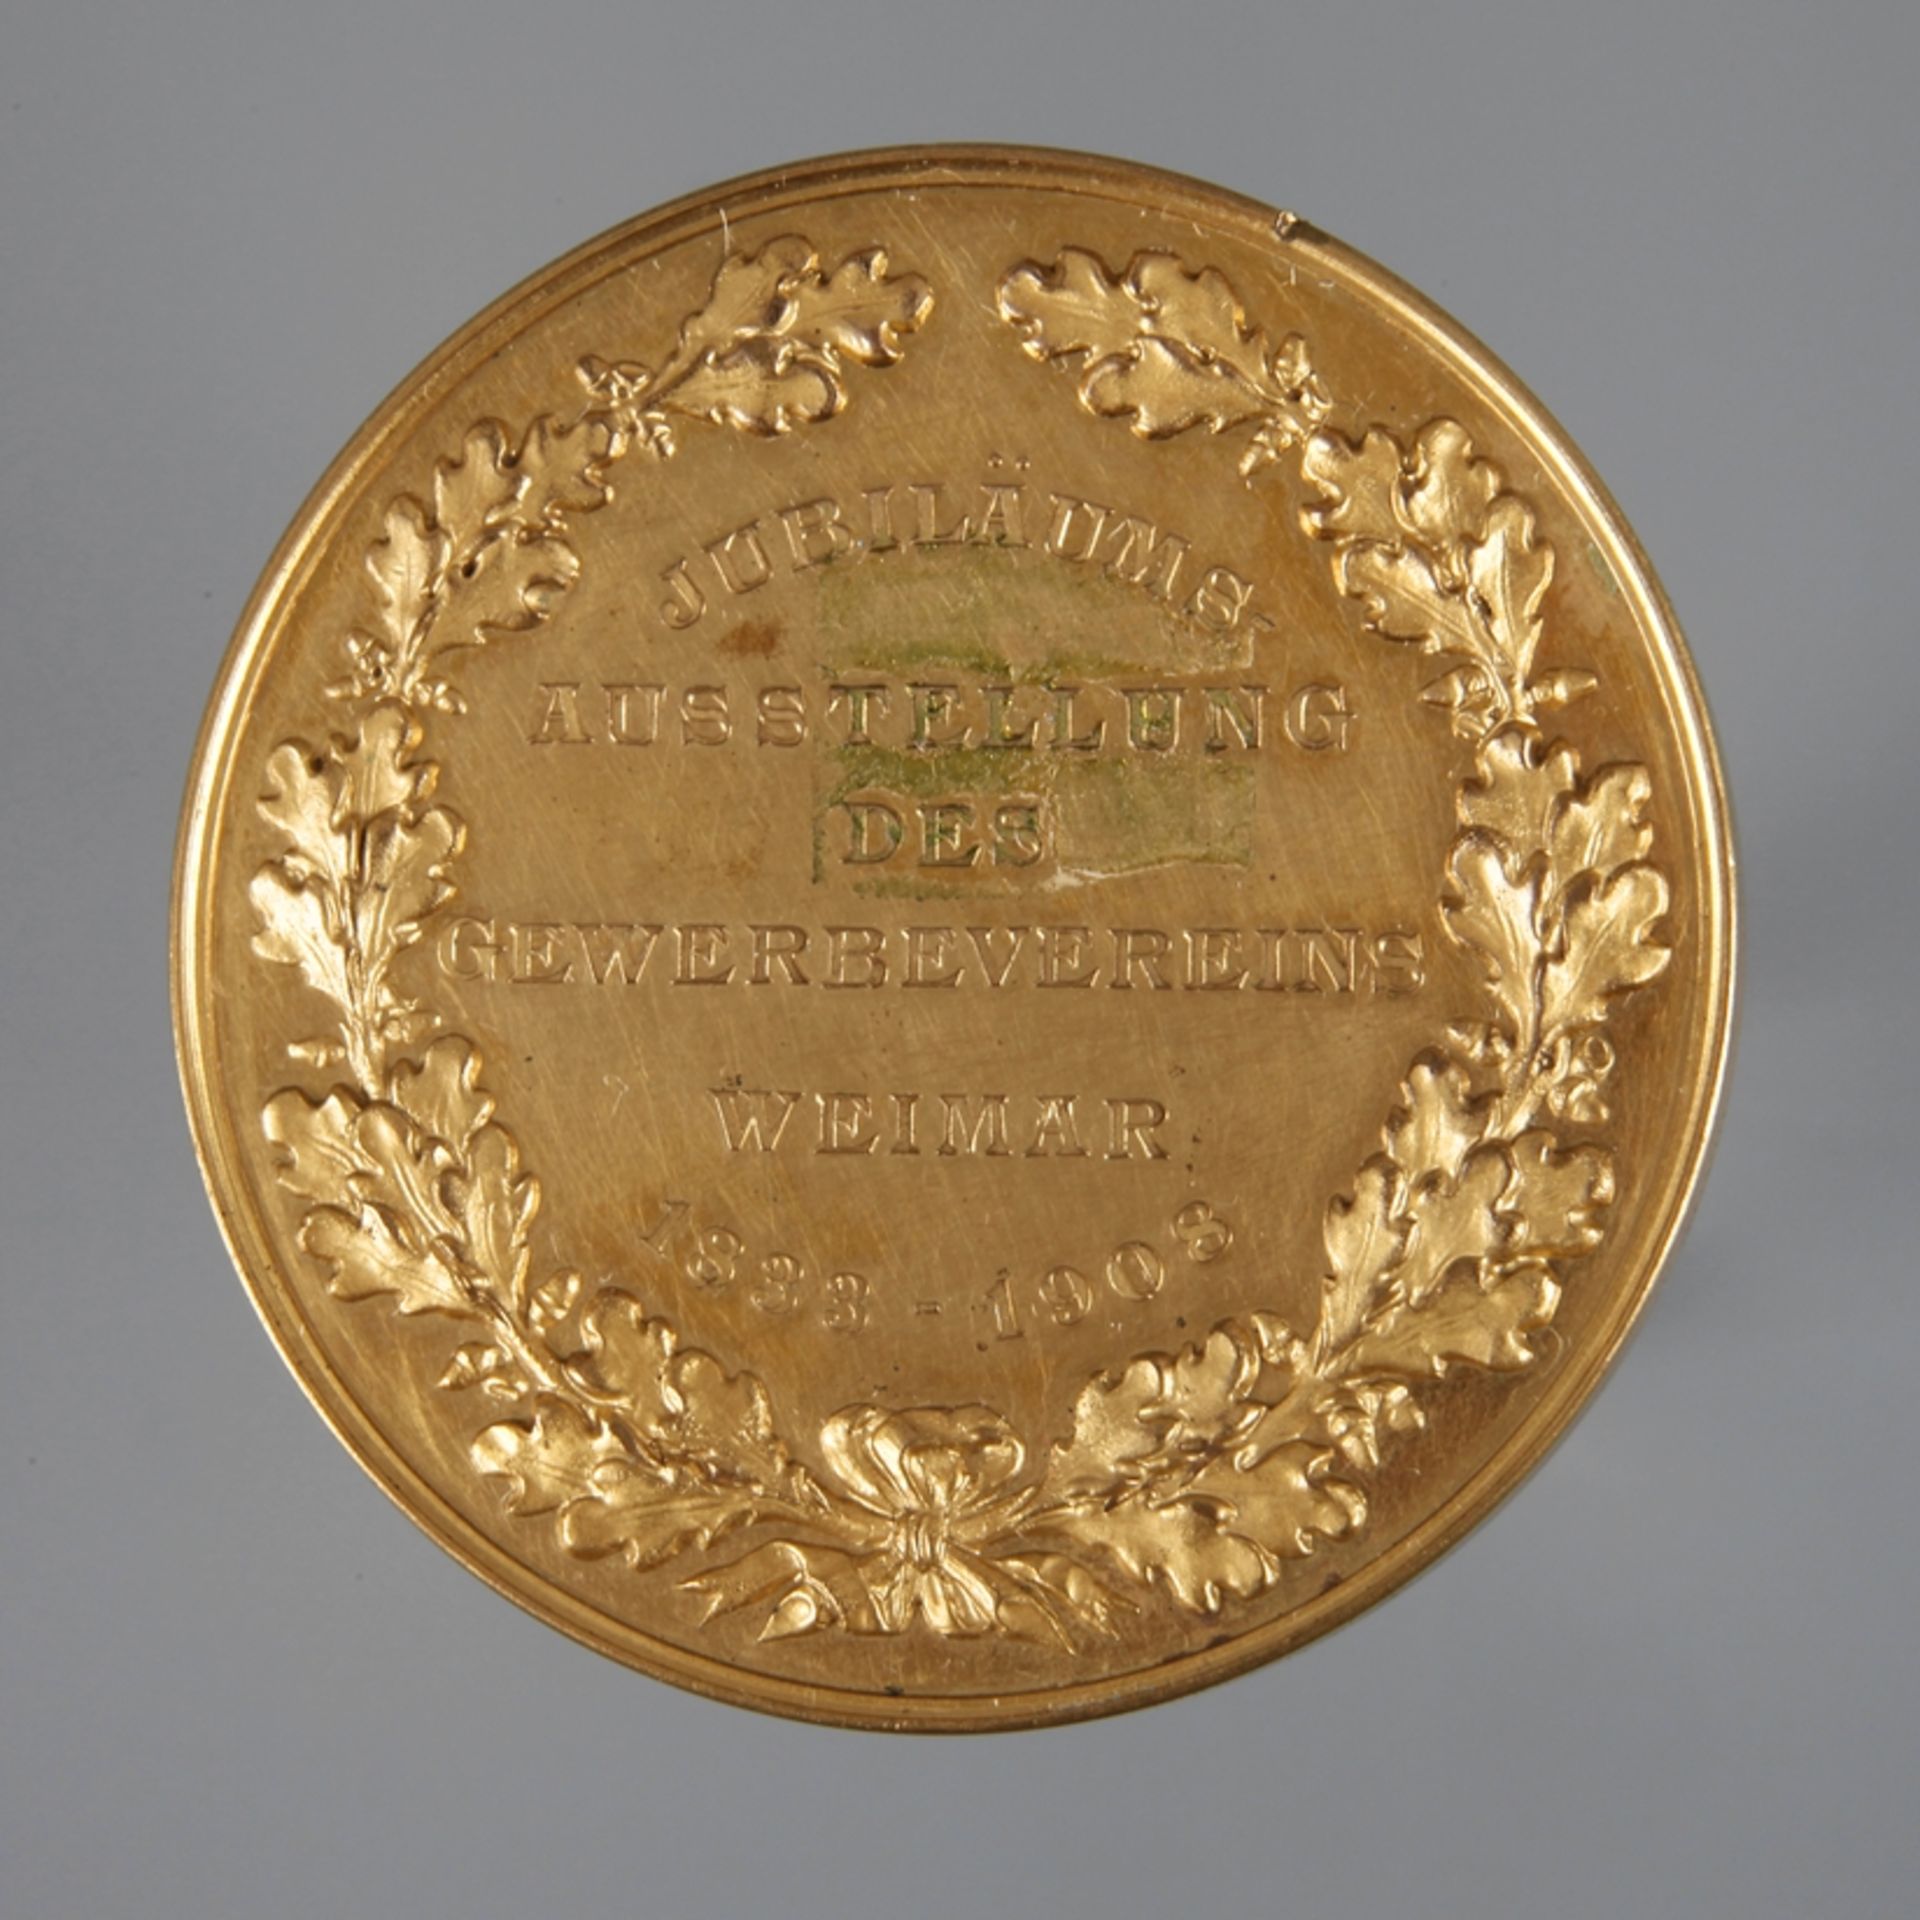 Medaille Gewerbeverein Weimar 1908Jubiläums-Ausstellung des Gewerbevereins Weimar 1833-1908,